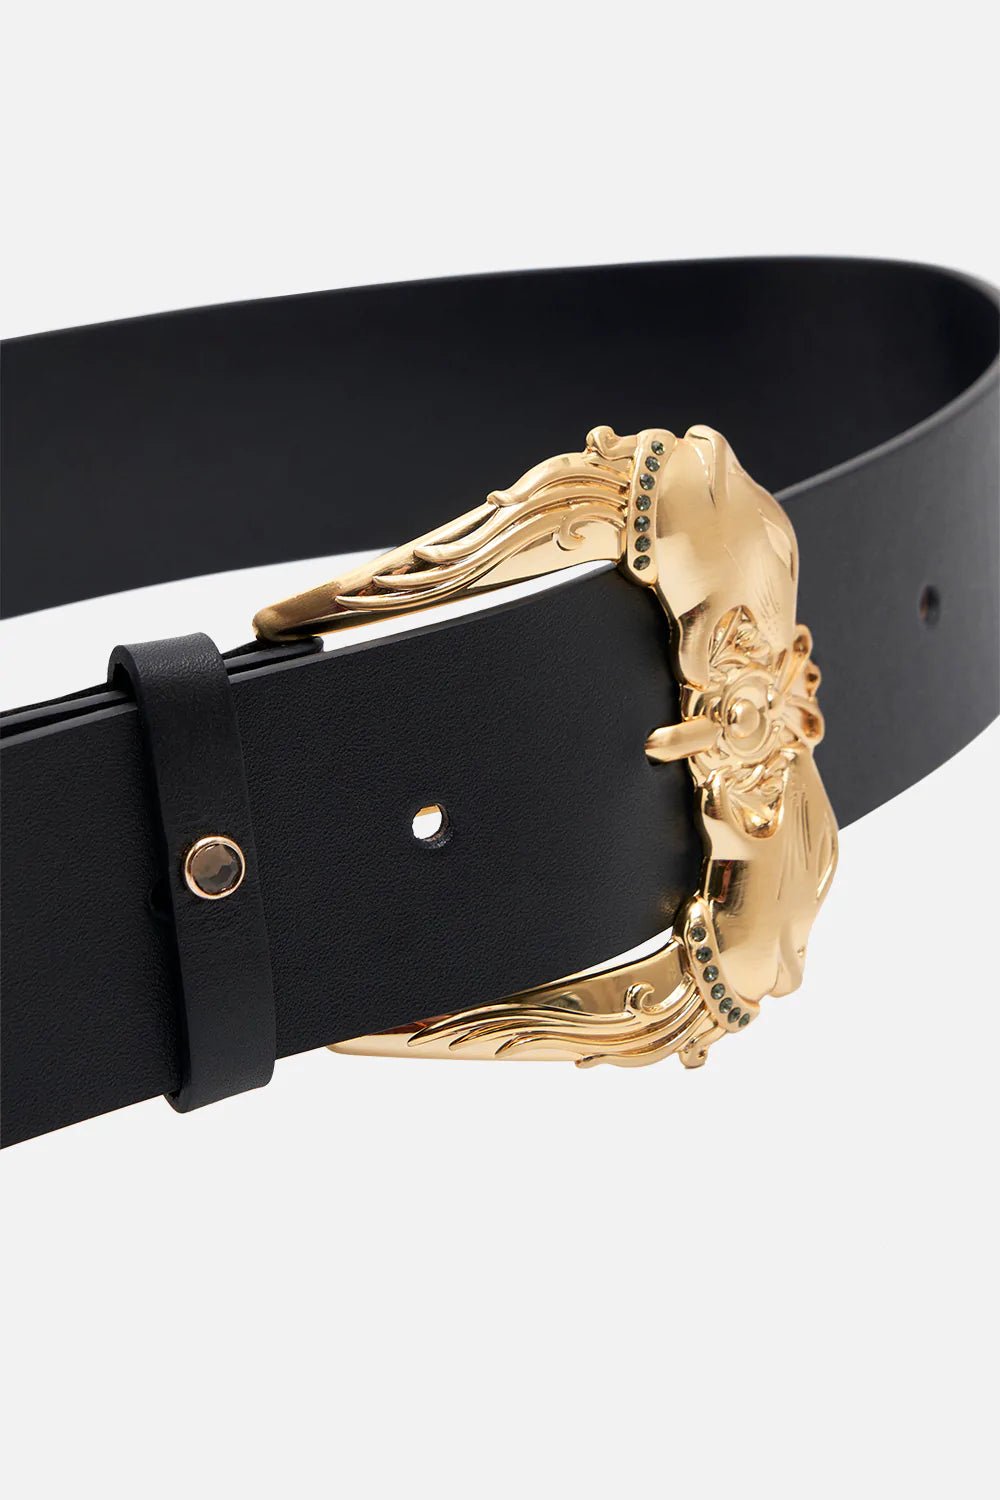 CAMILLA Buckle Belt Solid Black - Pinkhill, Darwin boutique, Australian high end fashion, Darwin Fashion